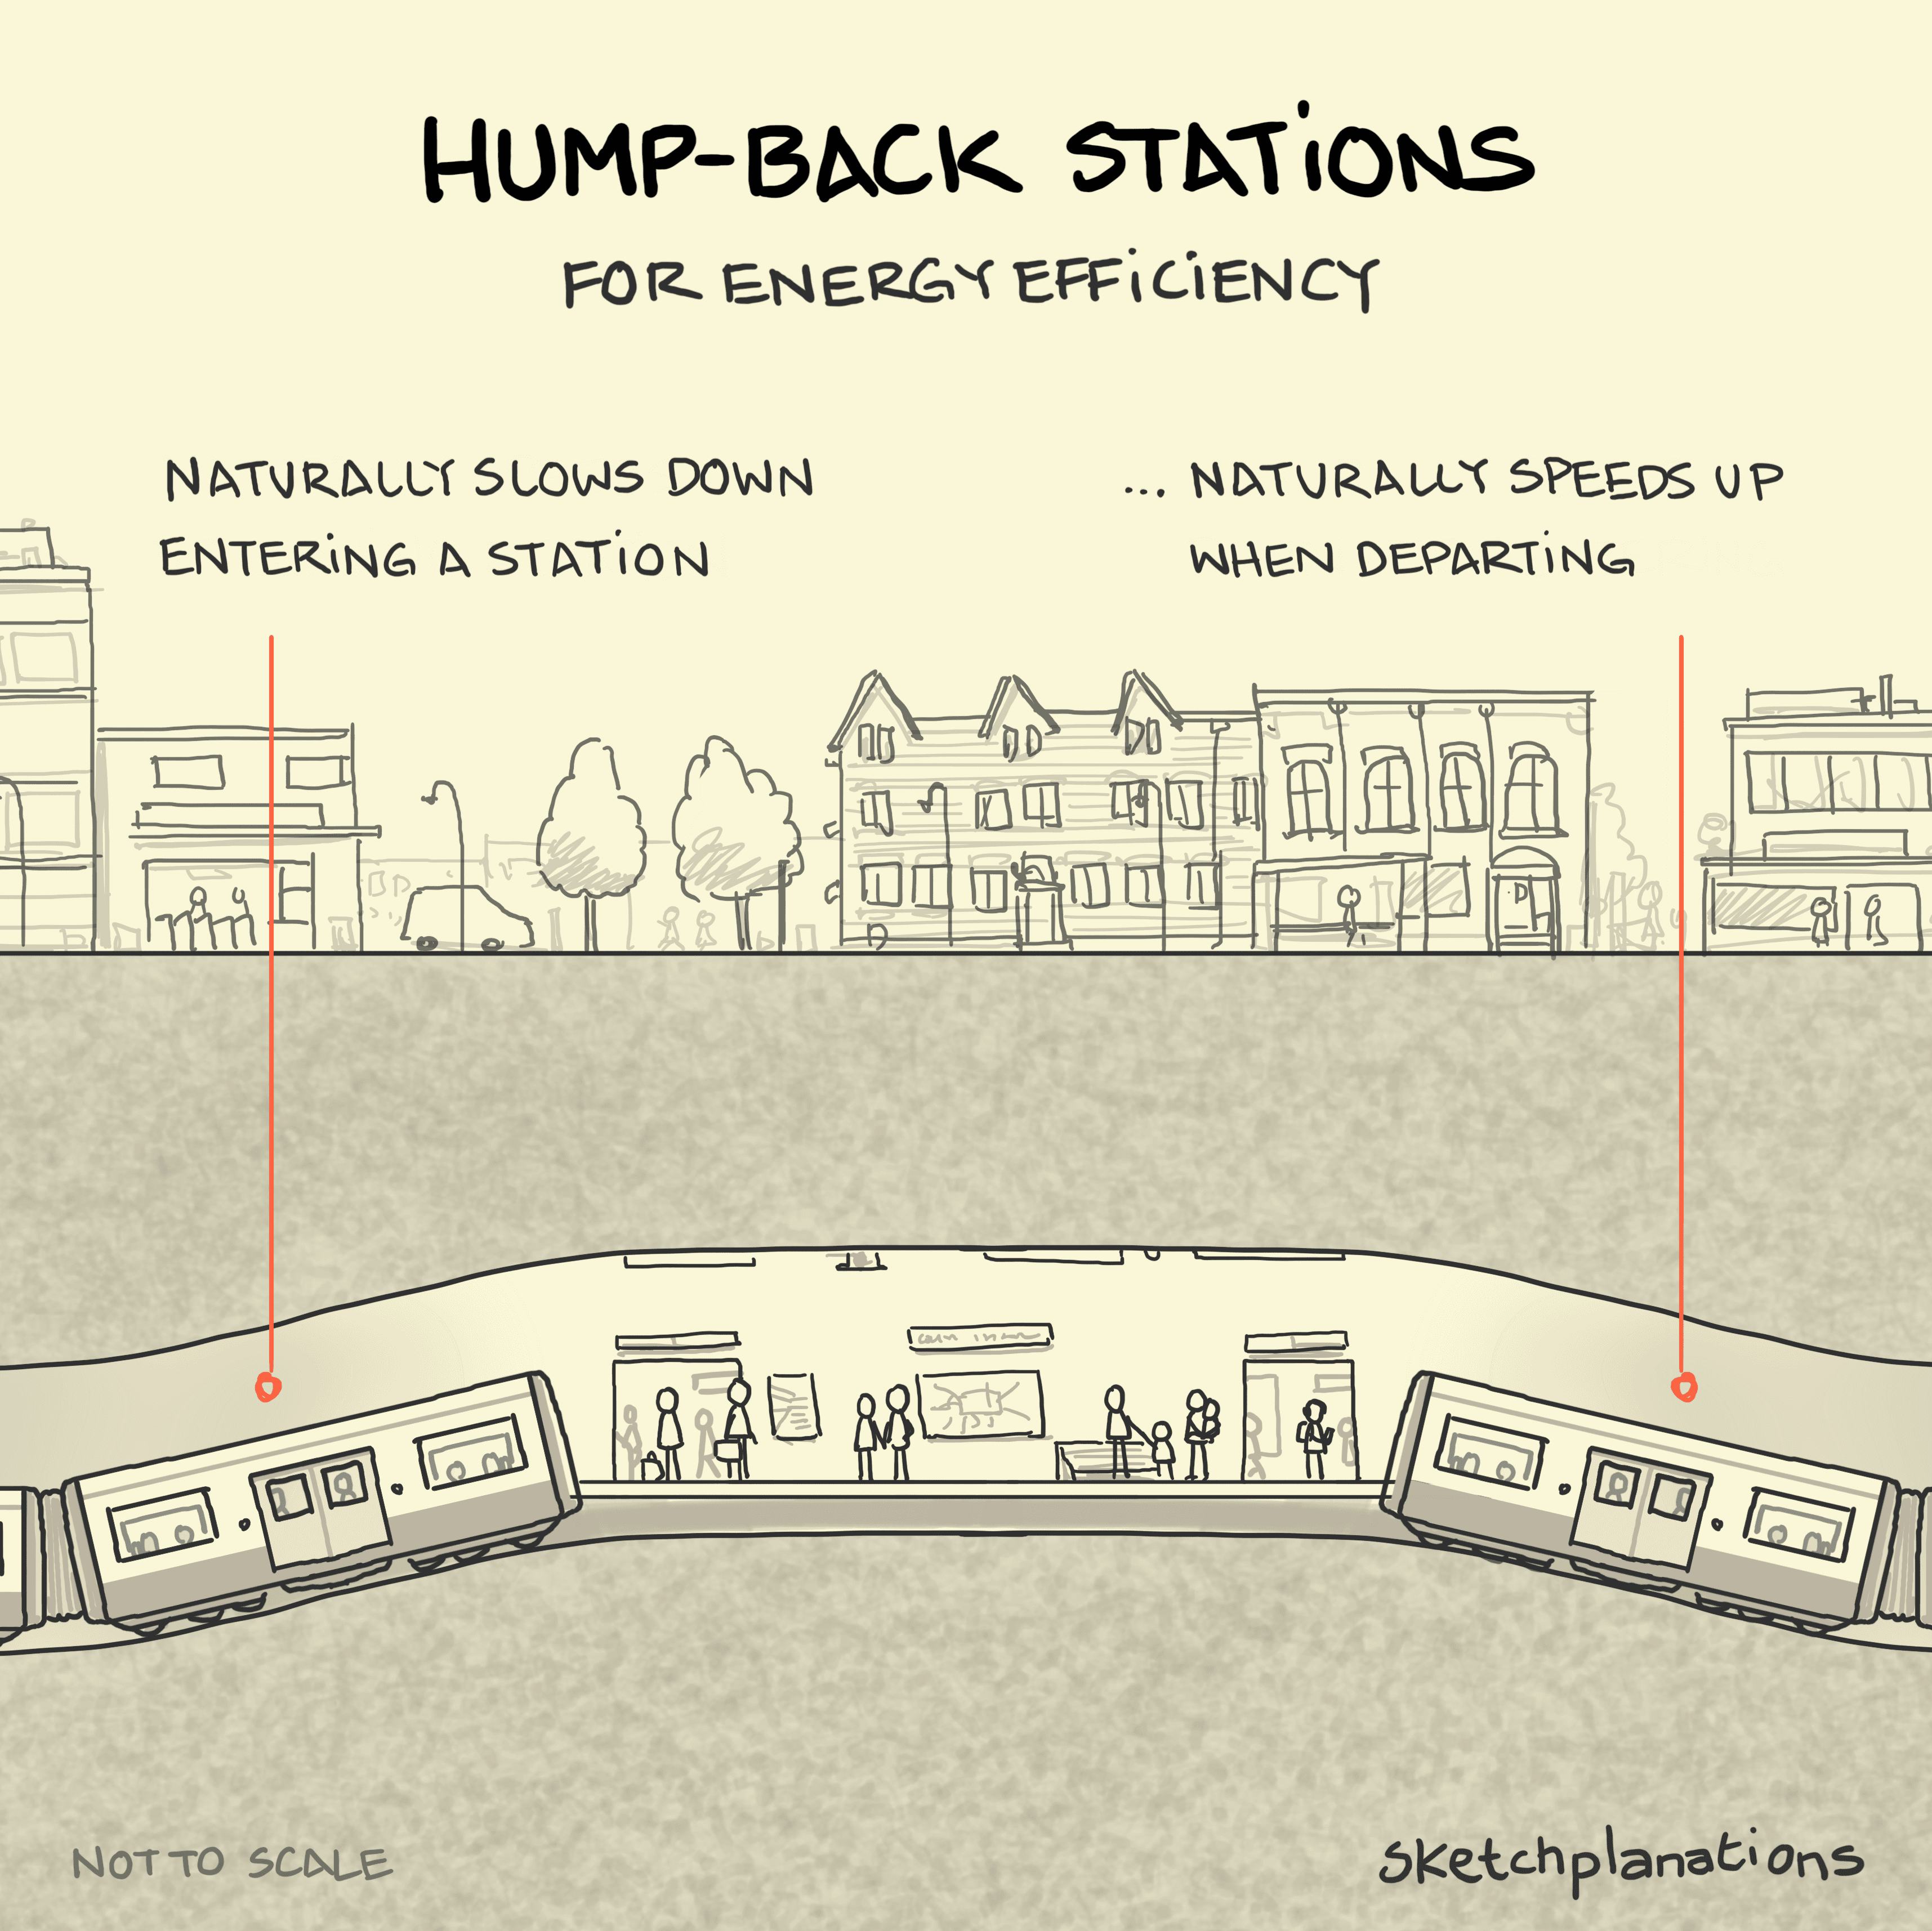 Hump-back stations - Sketchplanations